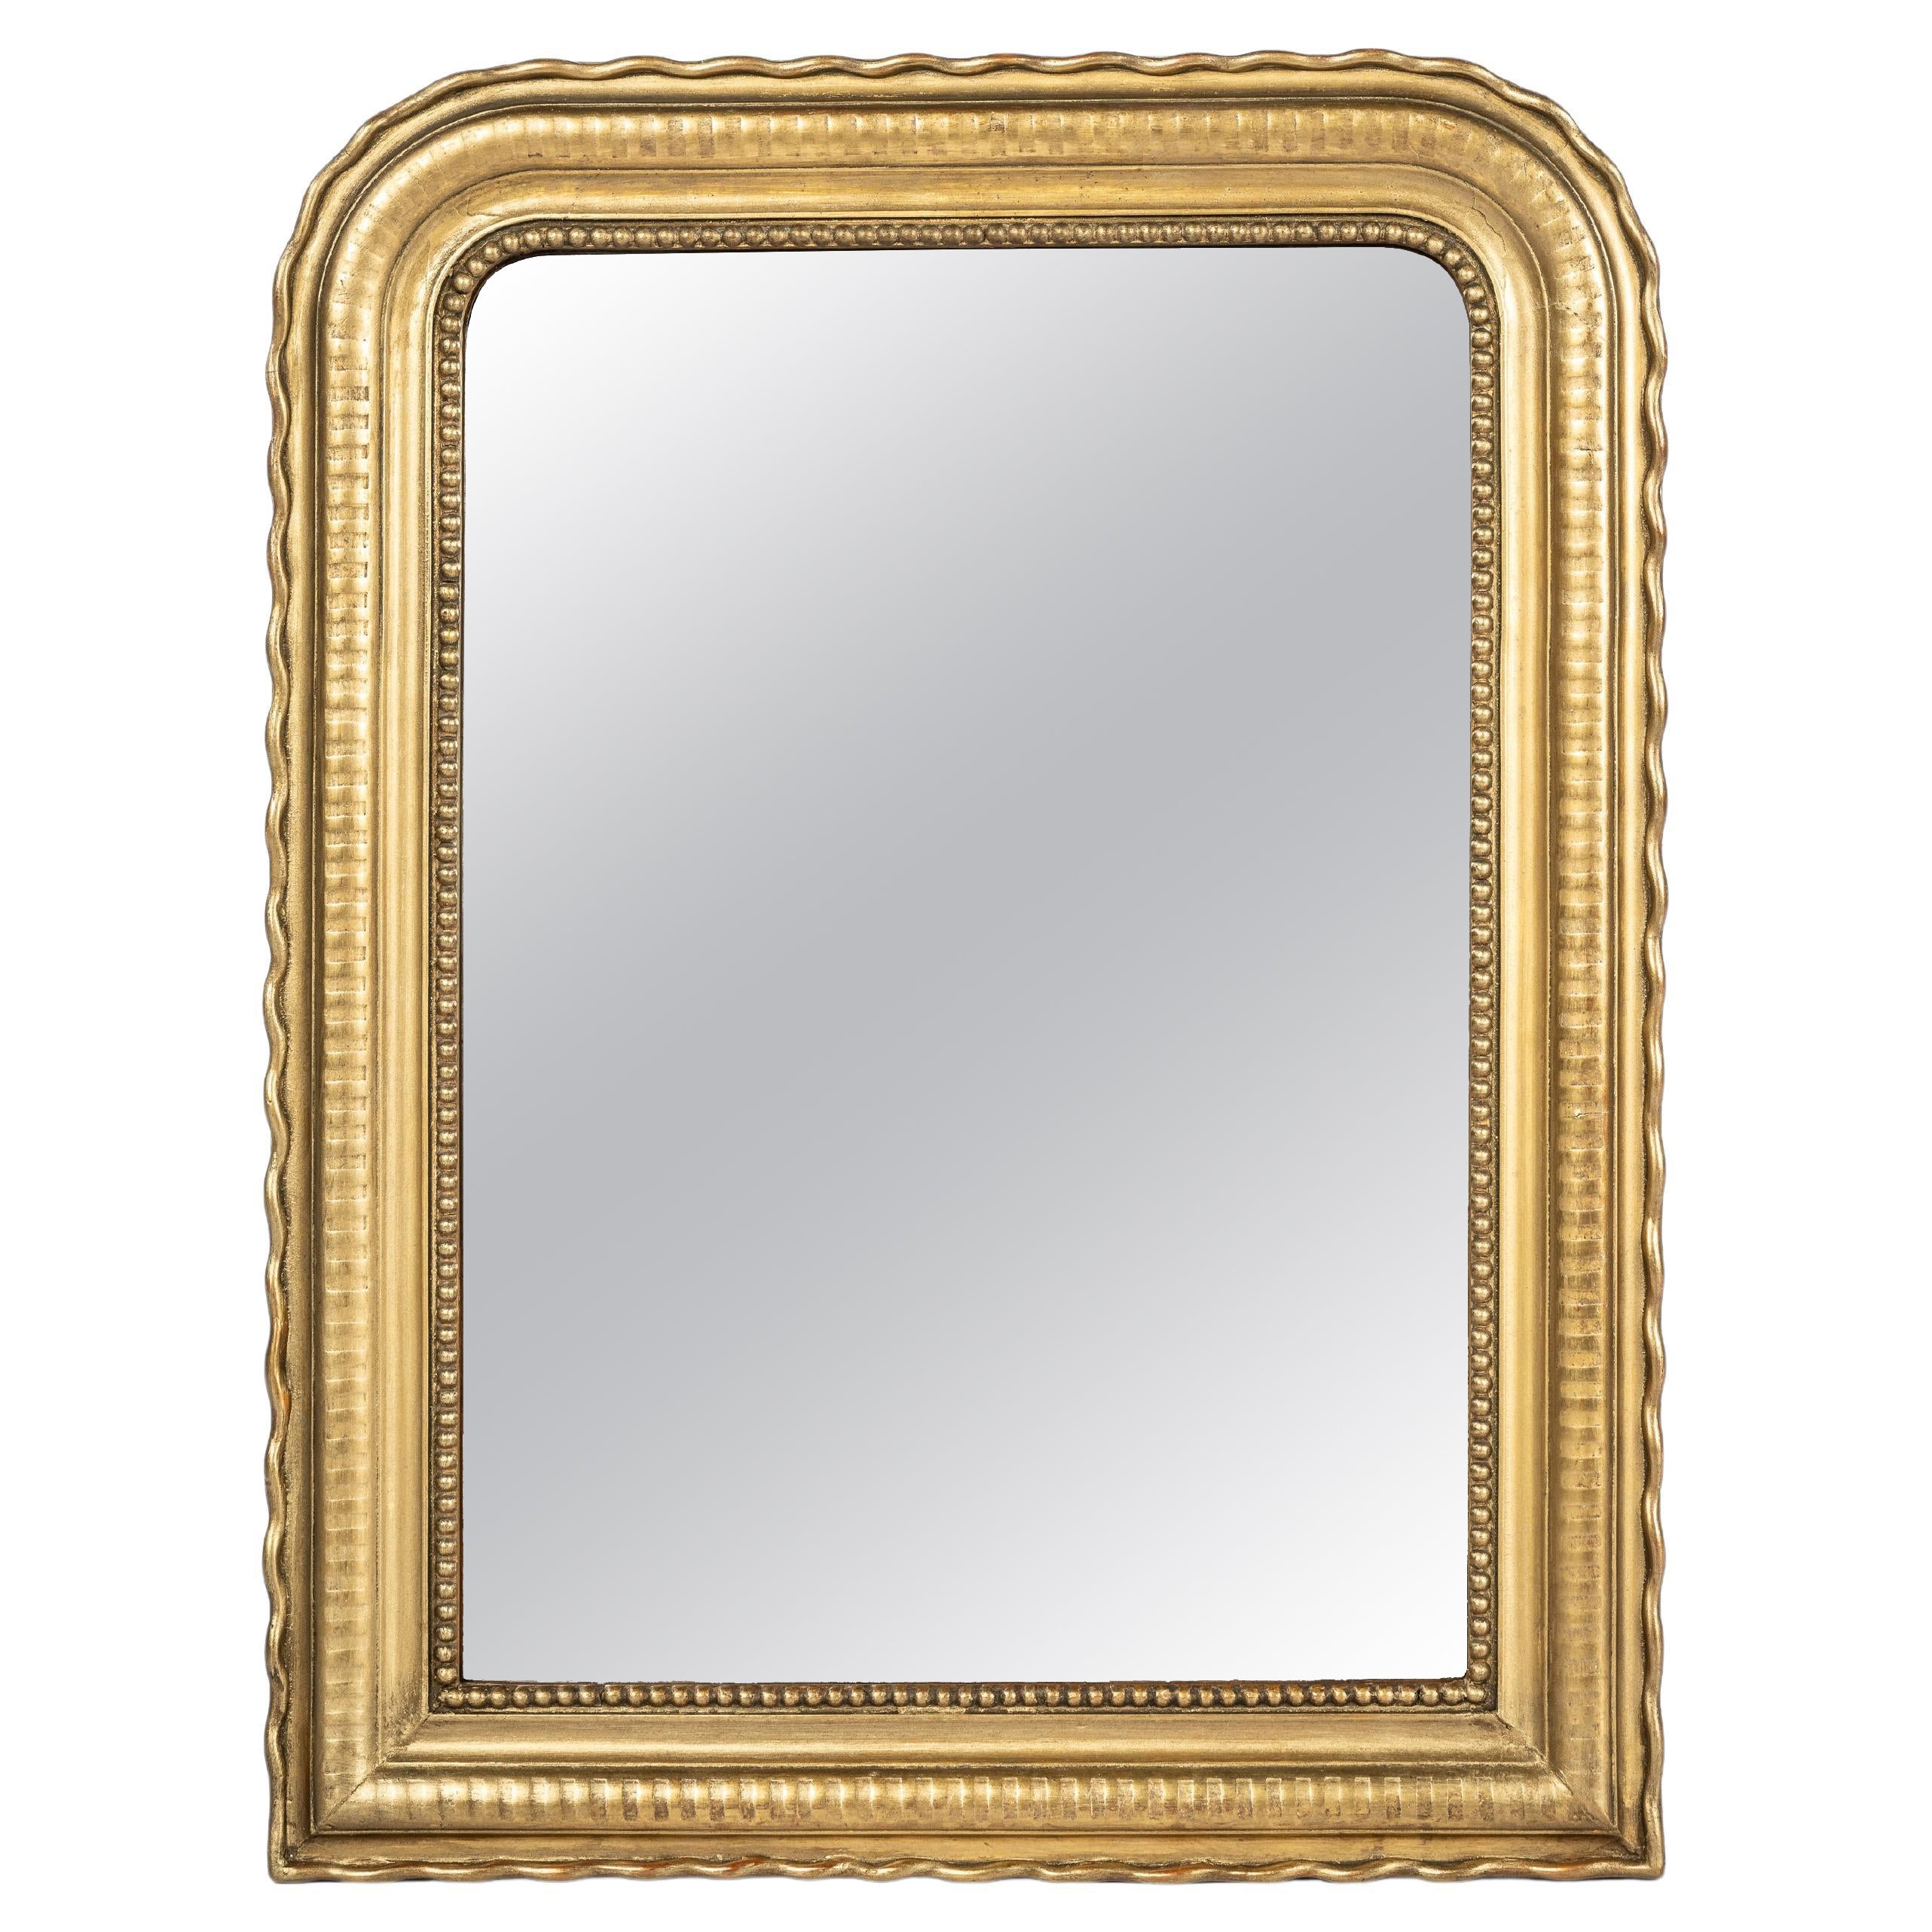 Antique Miroir Louis Philippe à bandes dorées à la feuille d'or de la fin du 19ème siècle.